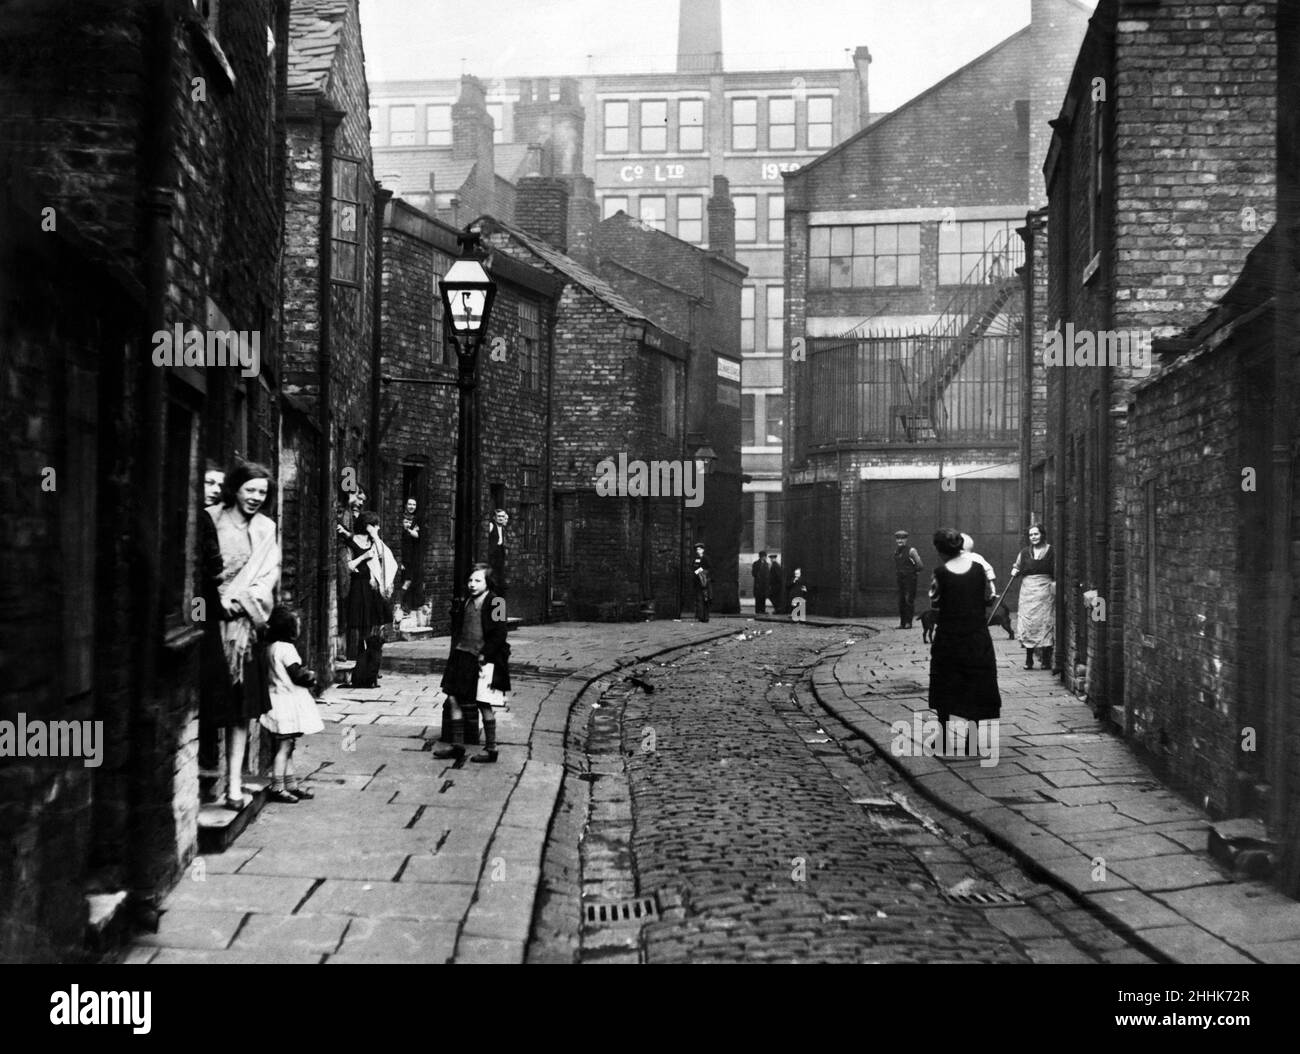 Eine namenlose Straße in Salfords Greengate-Gegend. Dies ist typisch für die Lebensbedingungen der frühen dreißiger Jahre. Zum Zeitpunkt dieses Fotos wurde die Straße unter einem Slum-Clearance-Plan für den Abriss aufgeführt. Februar 1933. Stockfoto